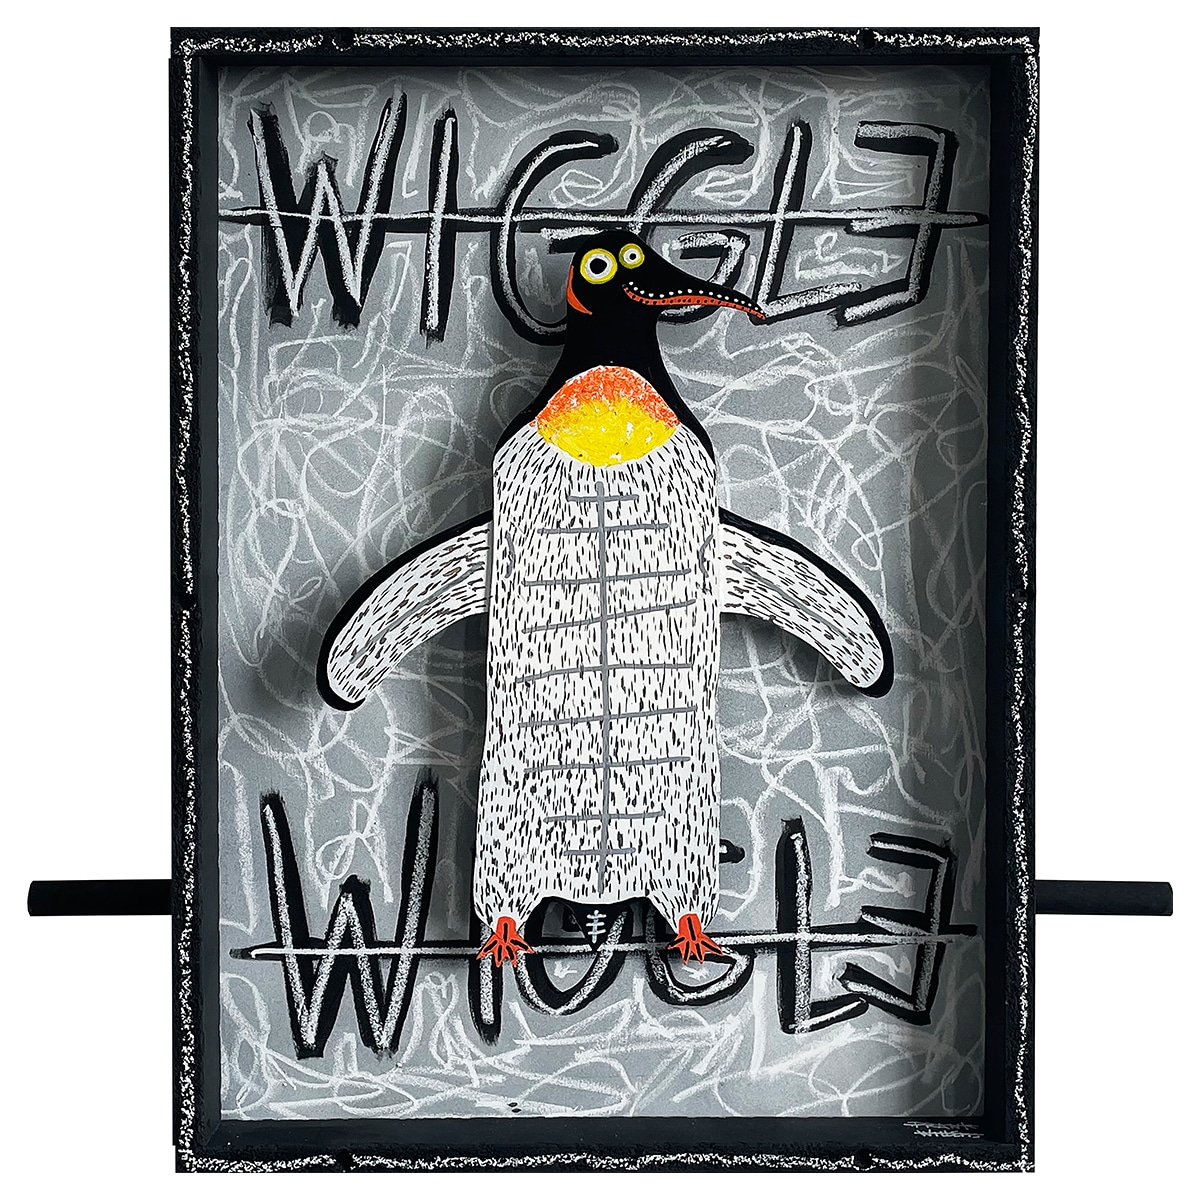 WIGGLE WIGGLE #2